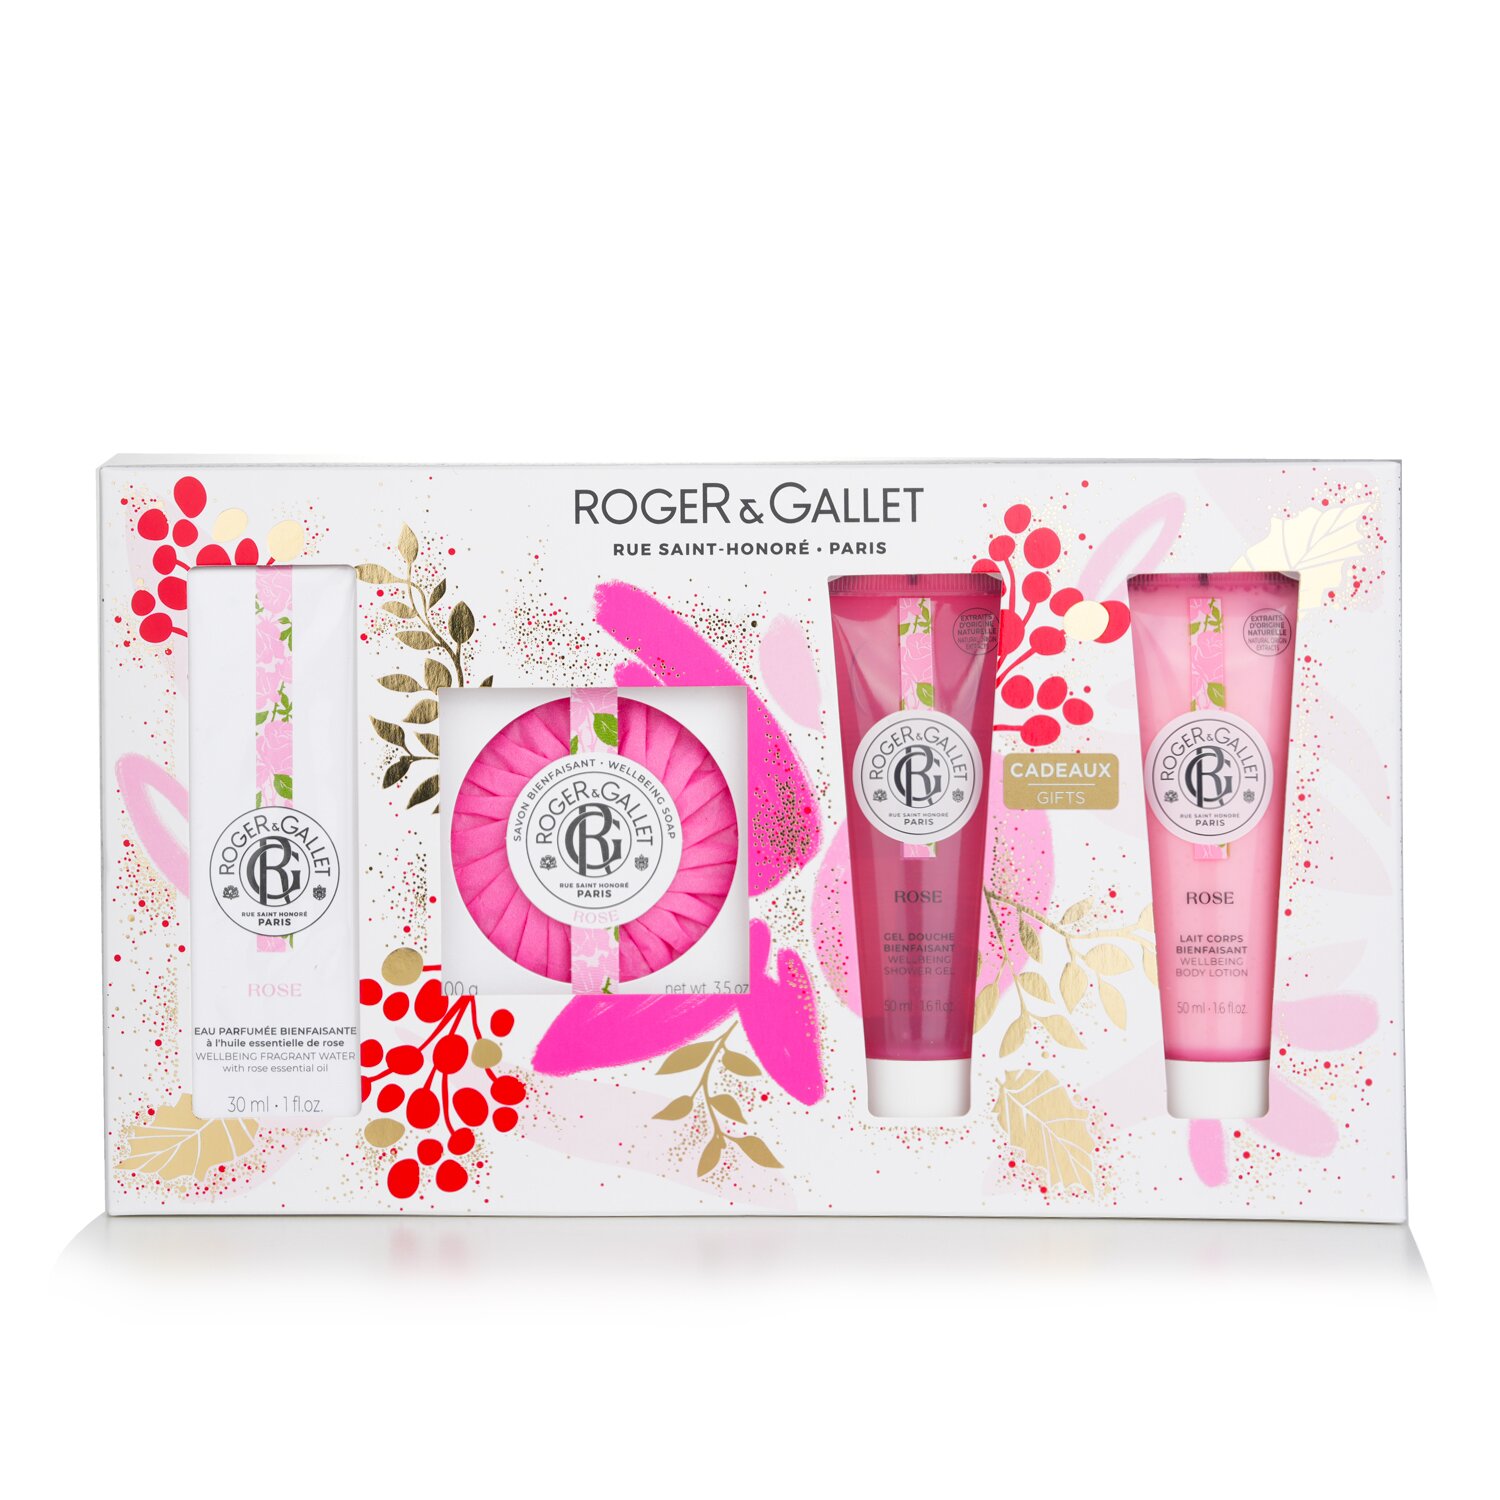 賀傑與賈雷 Roger & Gallet - Rose 玫瑰淡香水套裝